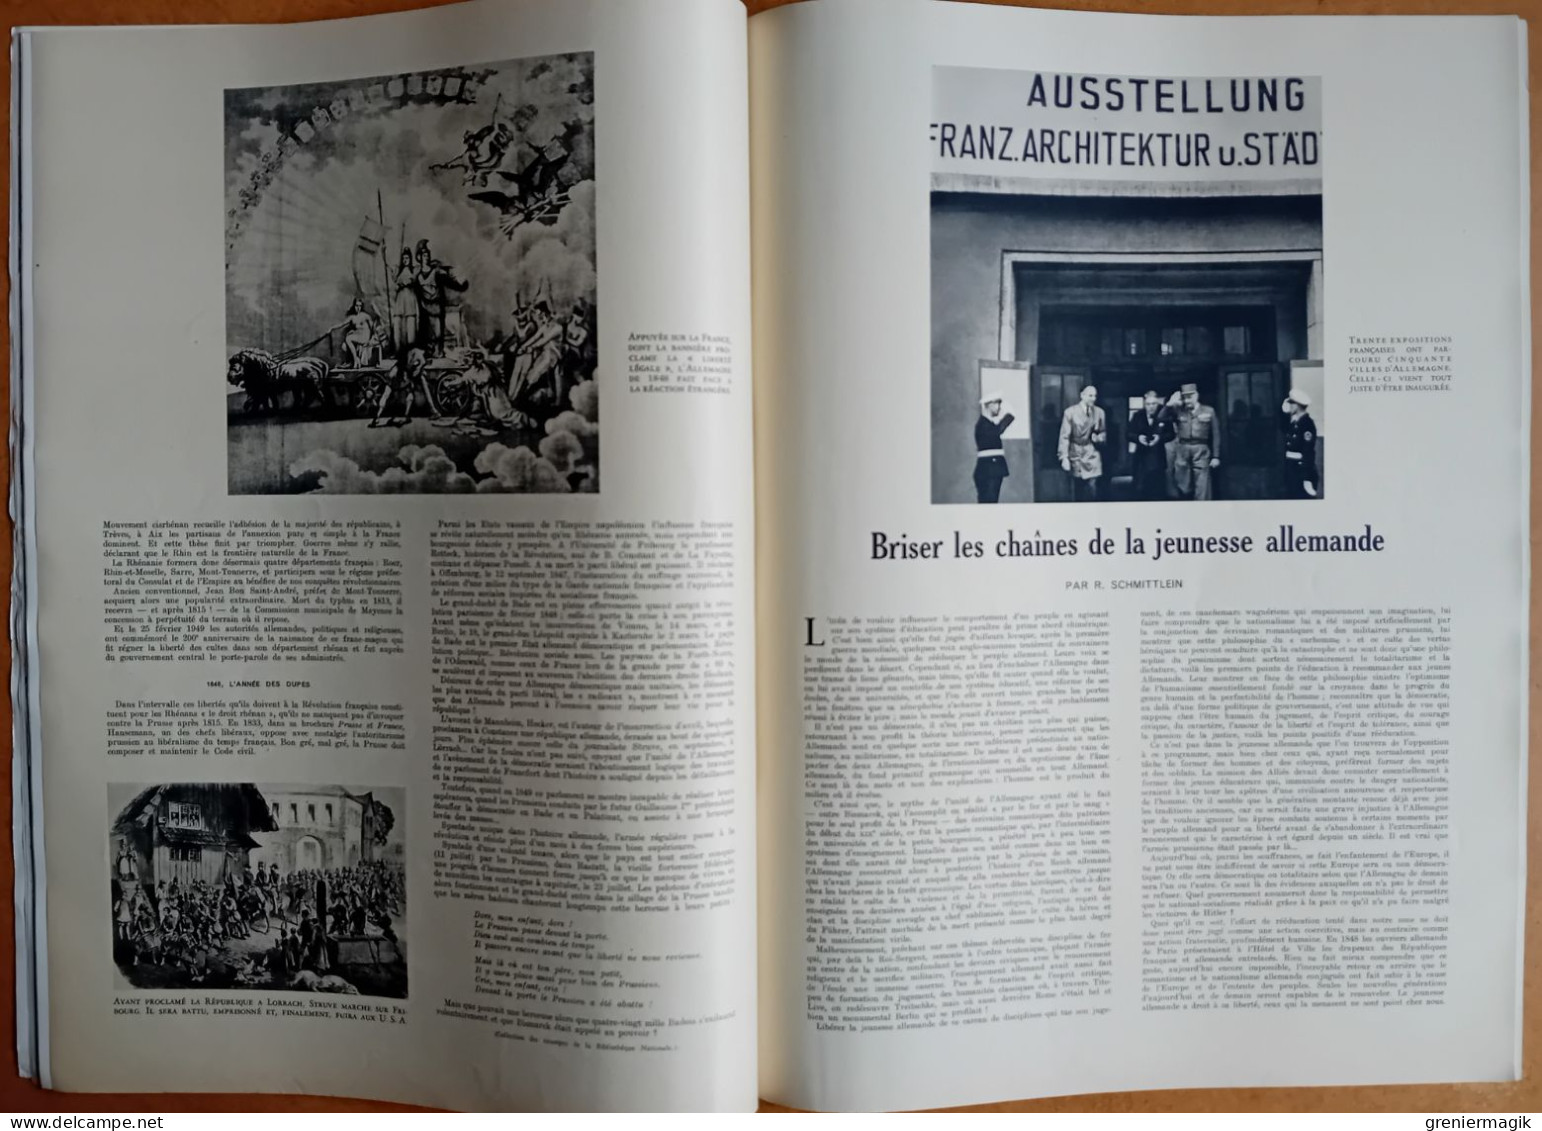 France Illustration N°205 17/09/1949 Bilan de quatre années d'occupation en Allemagne par Koenig/Economie/Berlin...